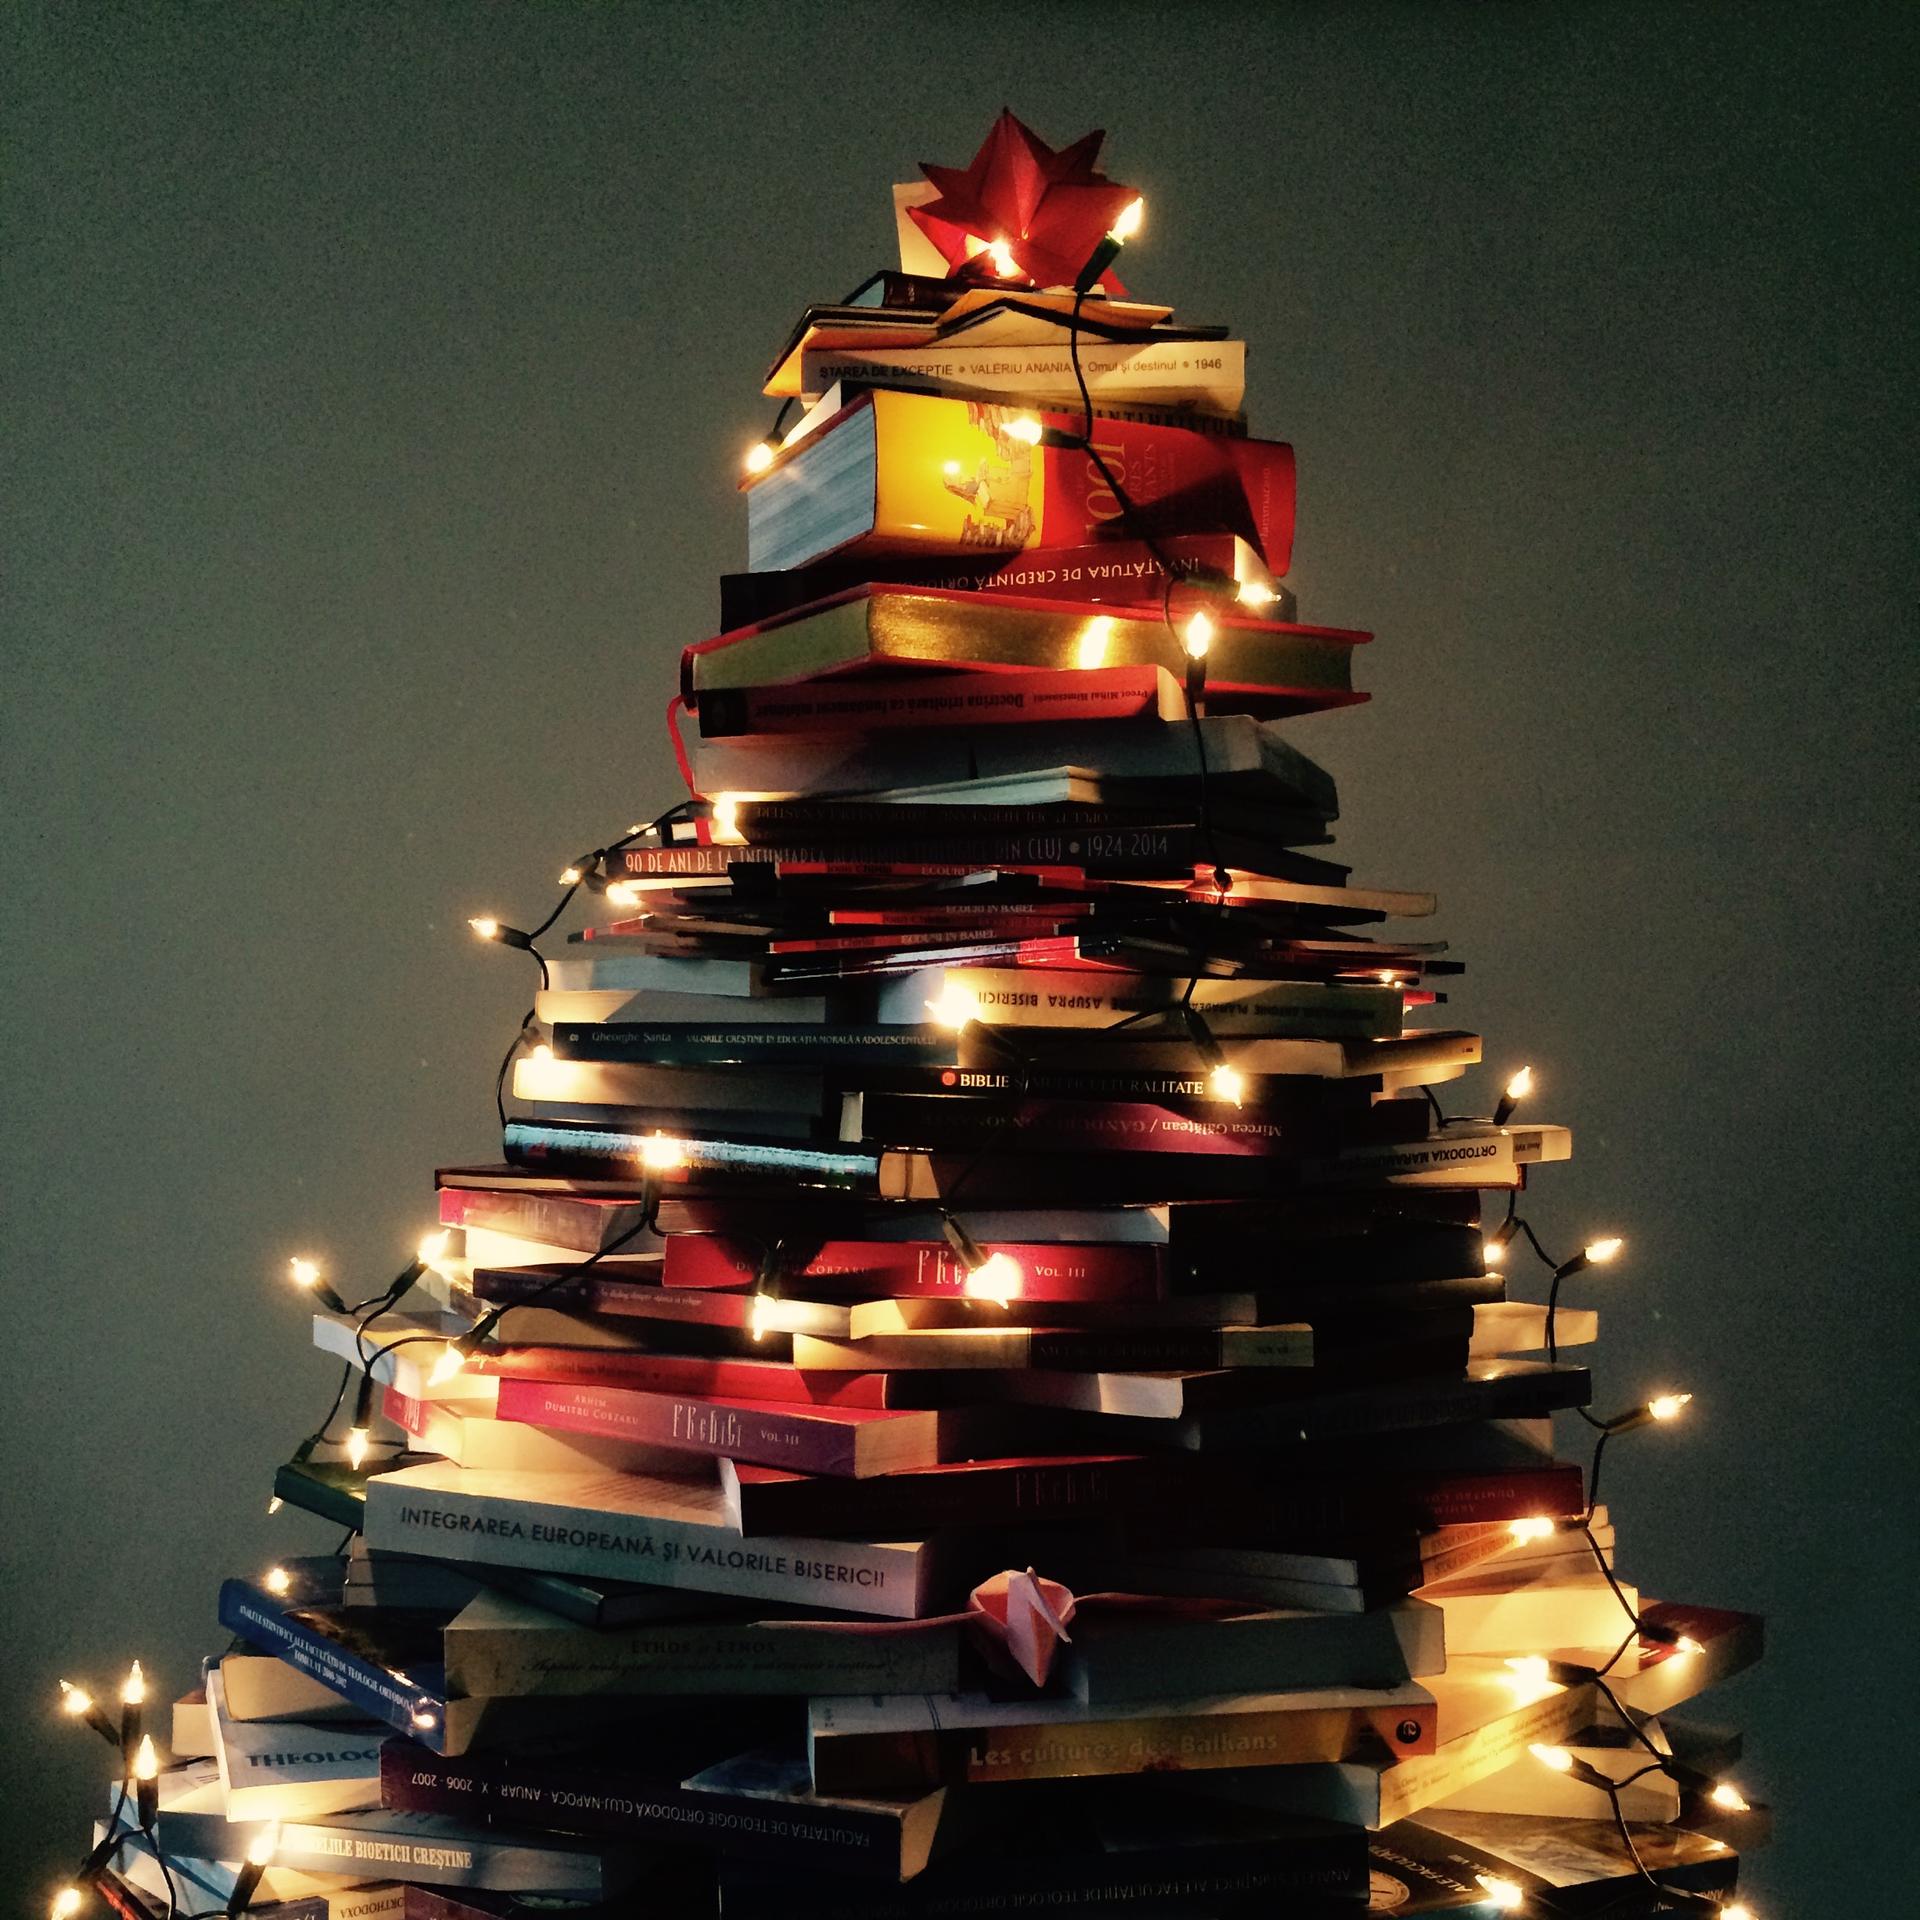 Bücher für den Gabentisch – Literaturtipps zu Weihnachten